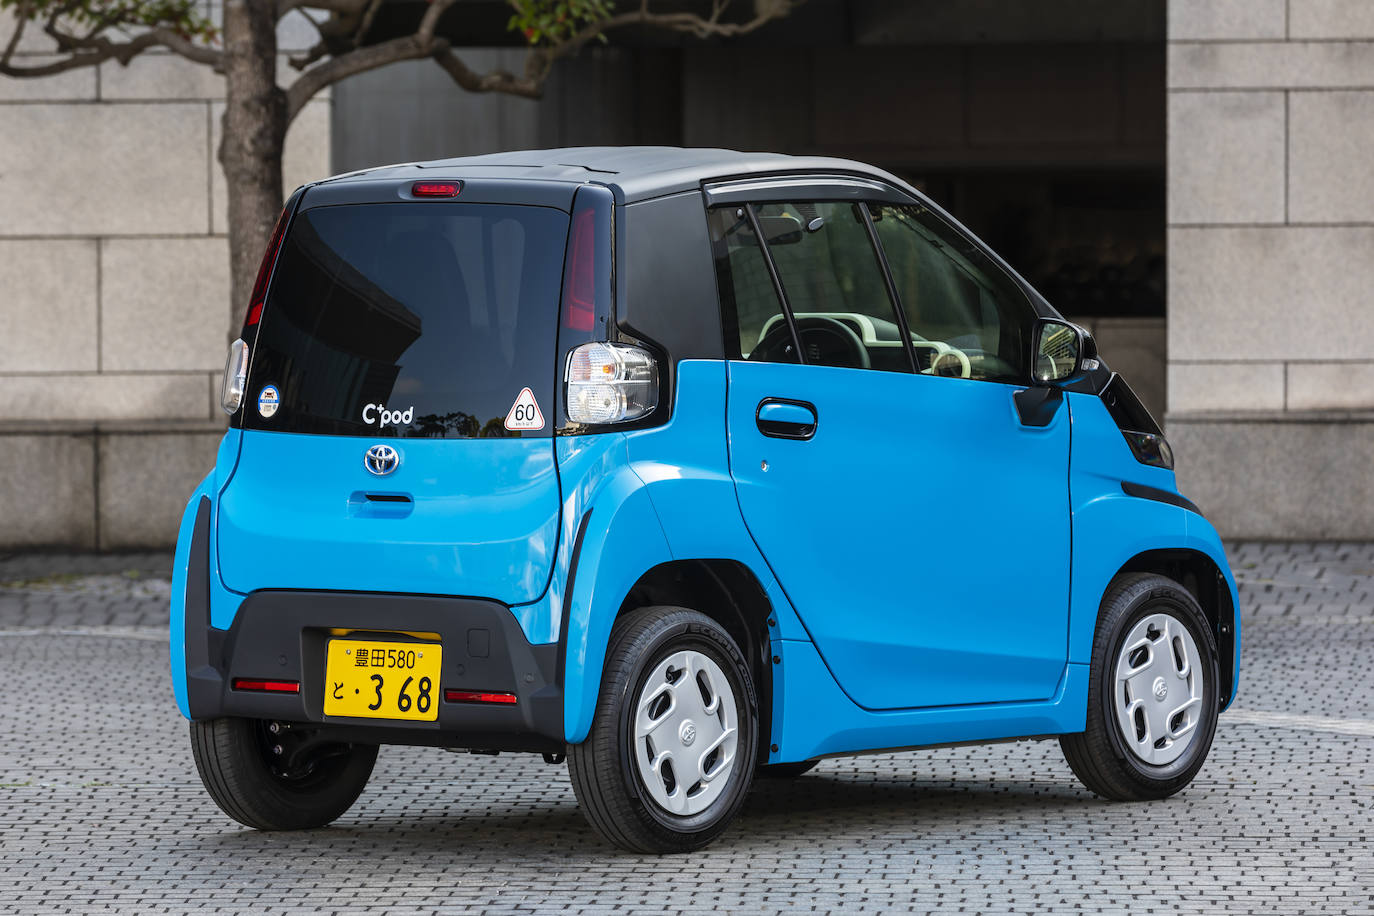 Fotos: Toyota lanza en Japón el ultracompacto C+pod 100% eléctrico